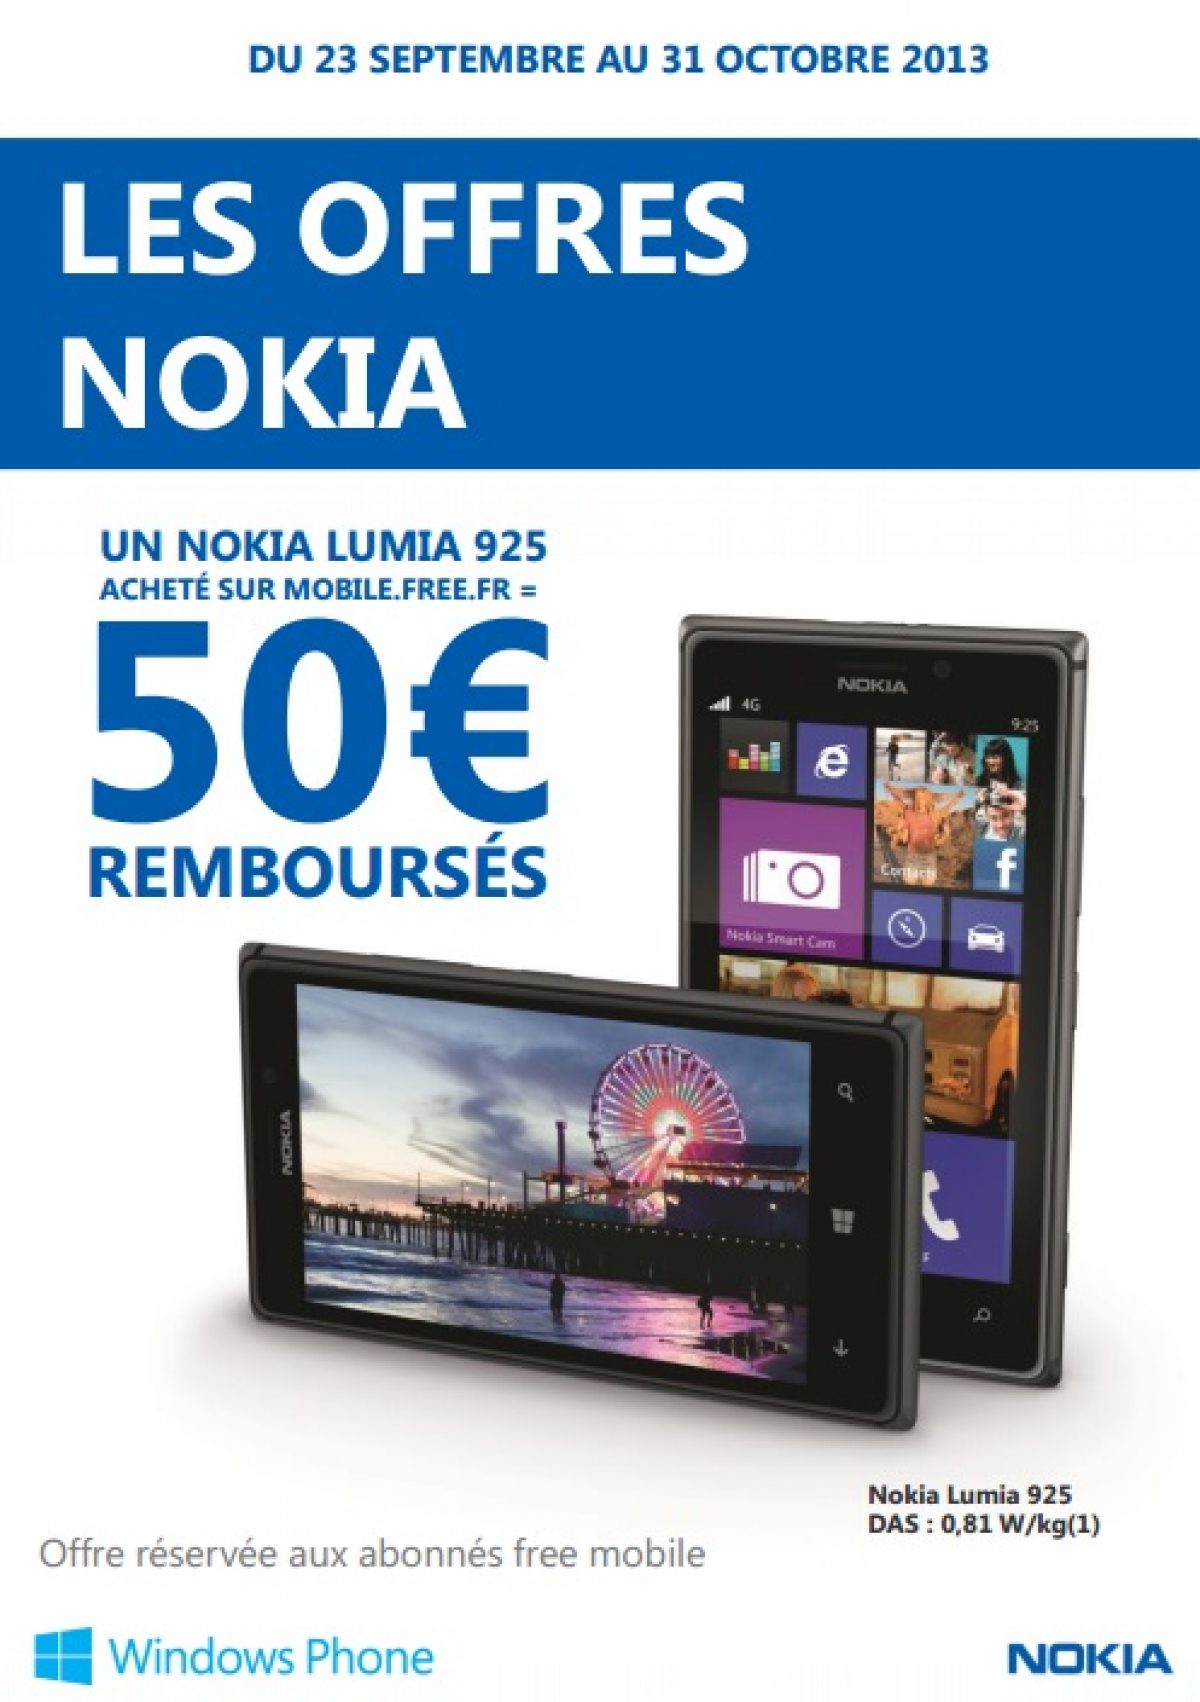 Free Mobile : 50 € remboursés sur le Nokia Lumia 925